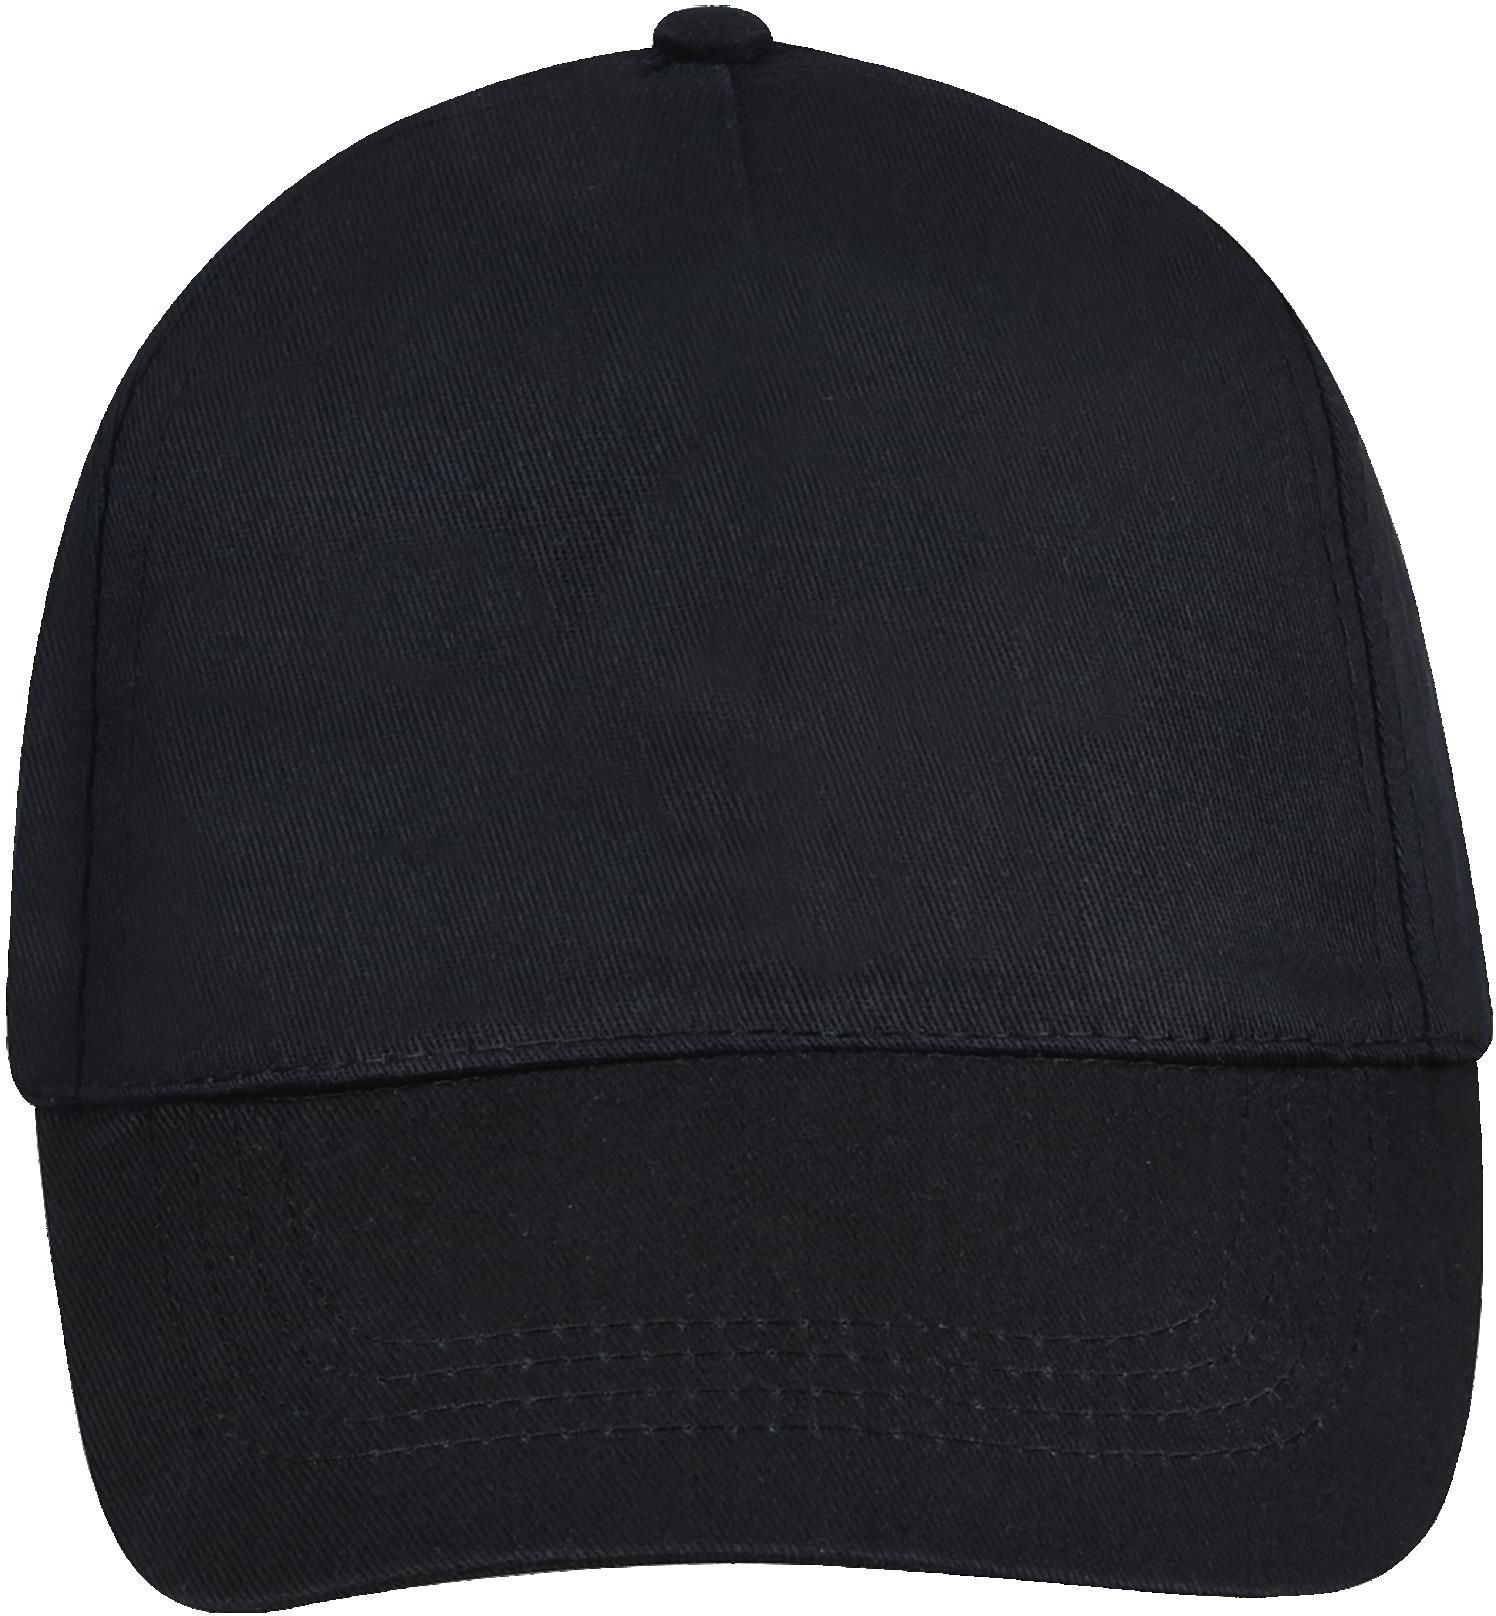 Πεντάφυλλο καπέλο Buzz SOLS 88119 Black